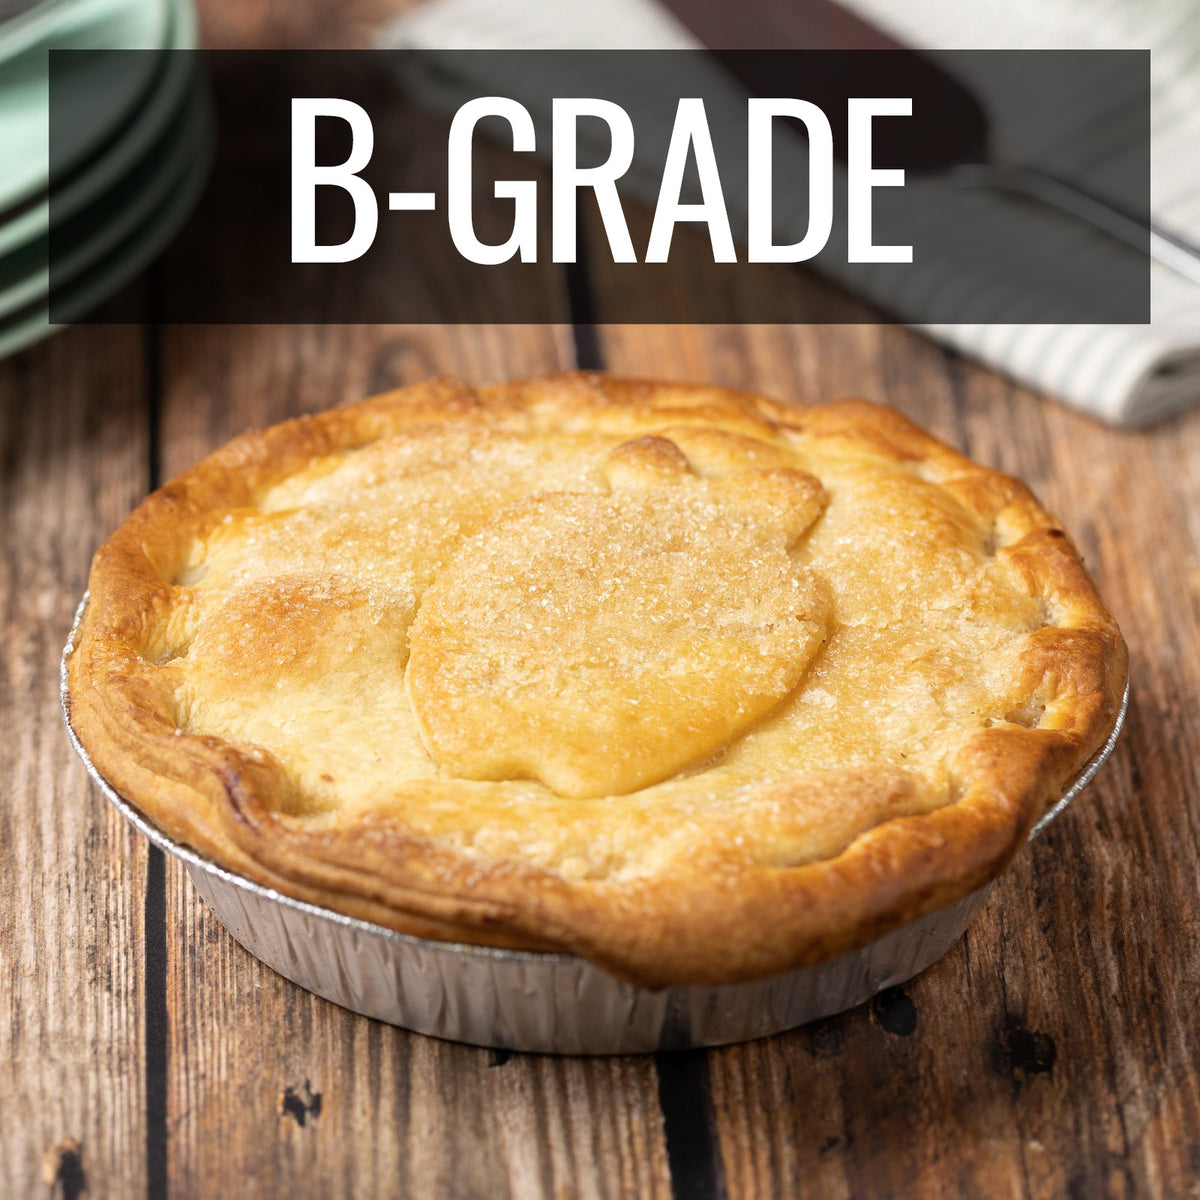 All-Natural Frozen Family Apple Pie B-Grade (19cm) - Horizon Farms